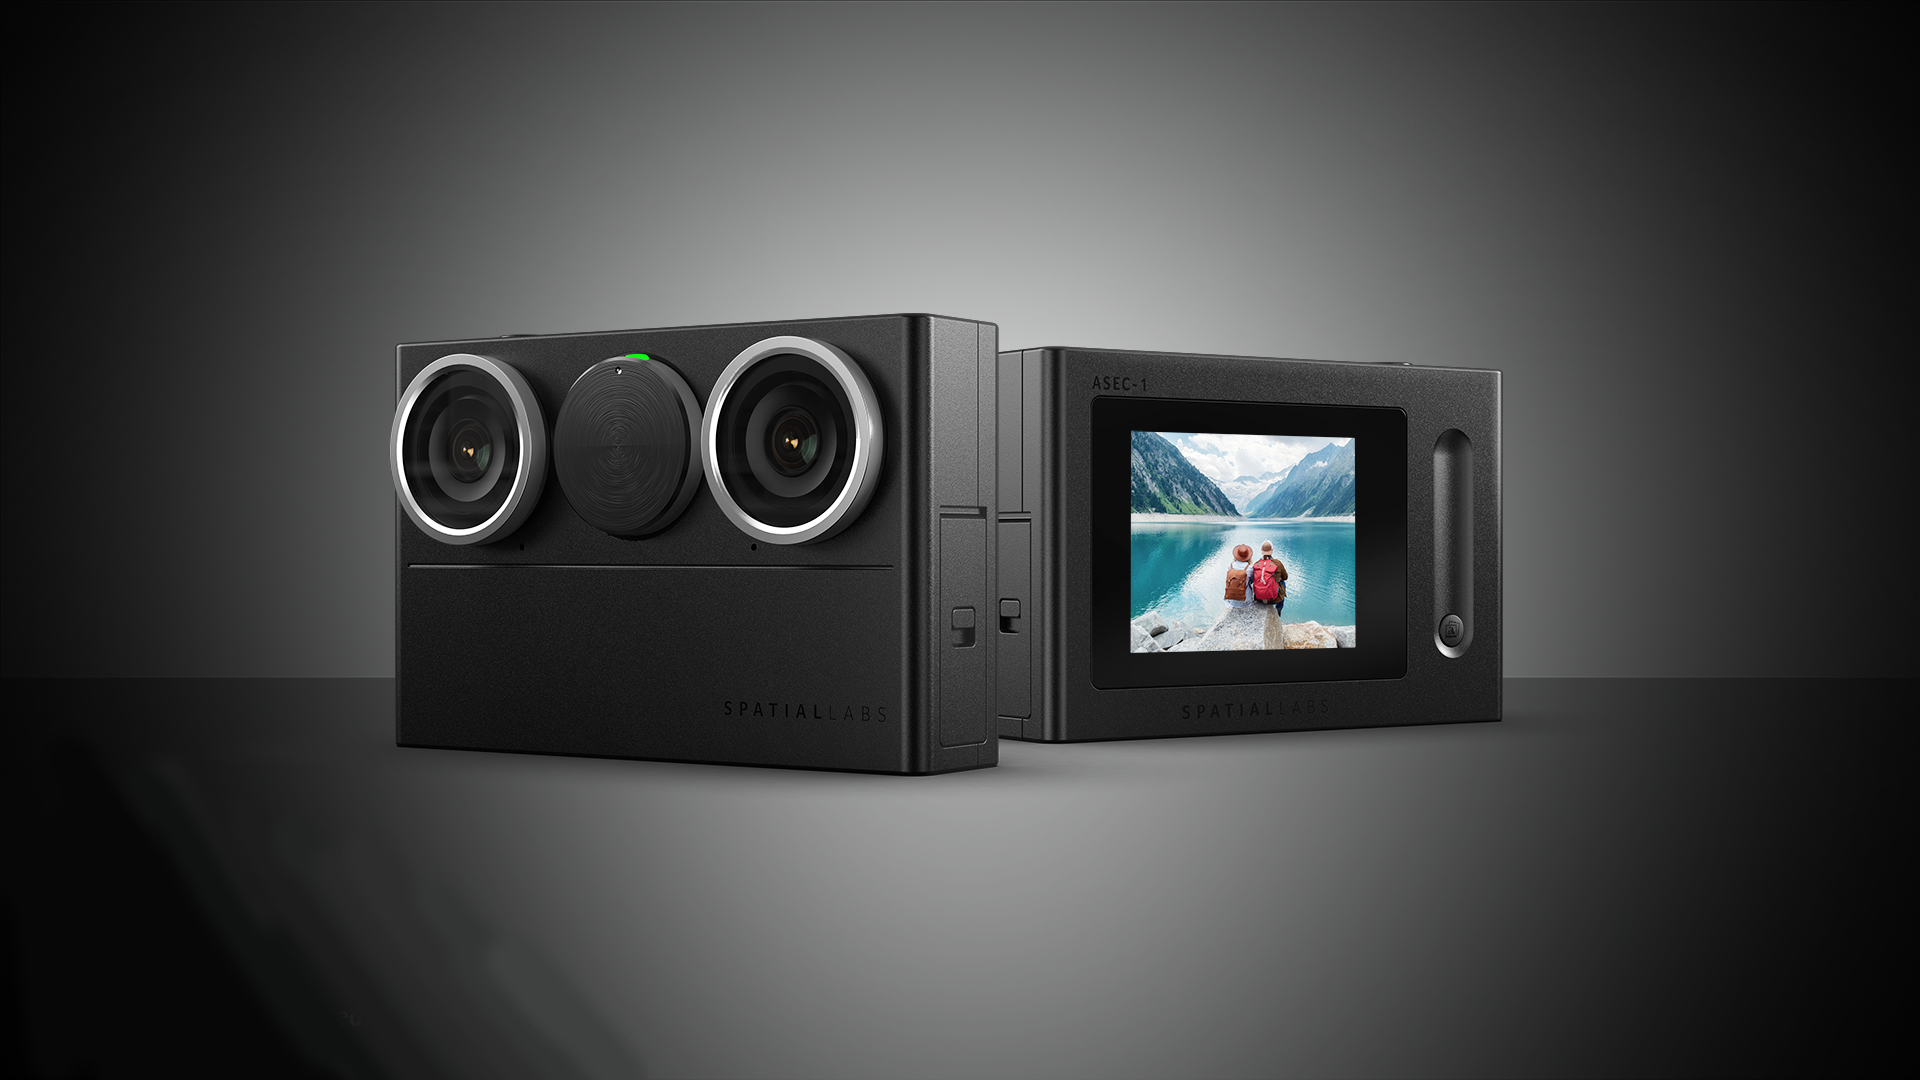 Acer SpatialLabs Eyes 3D Kamera: Valós Idejű 3D Élmények